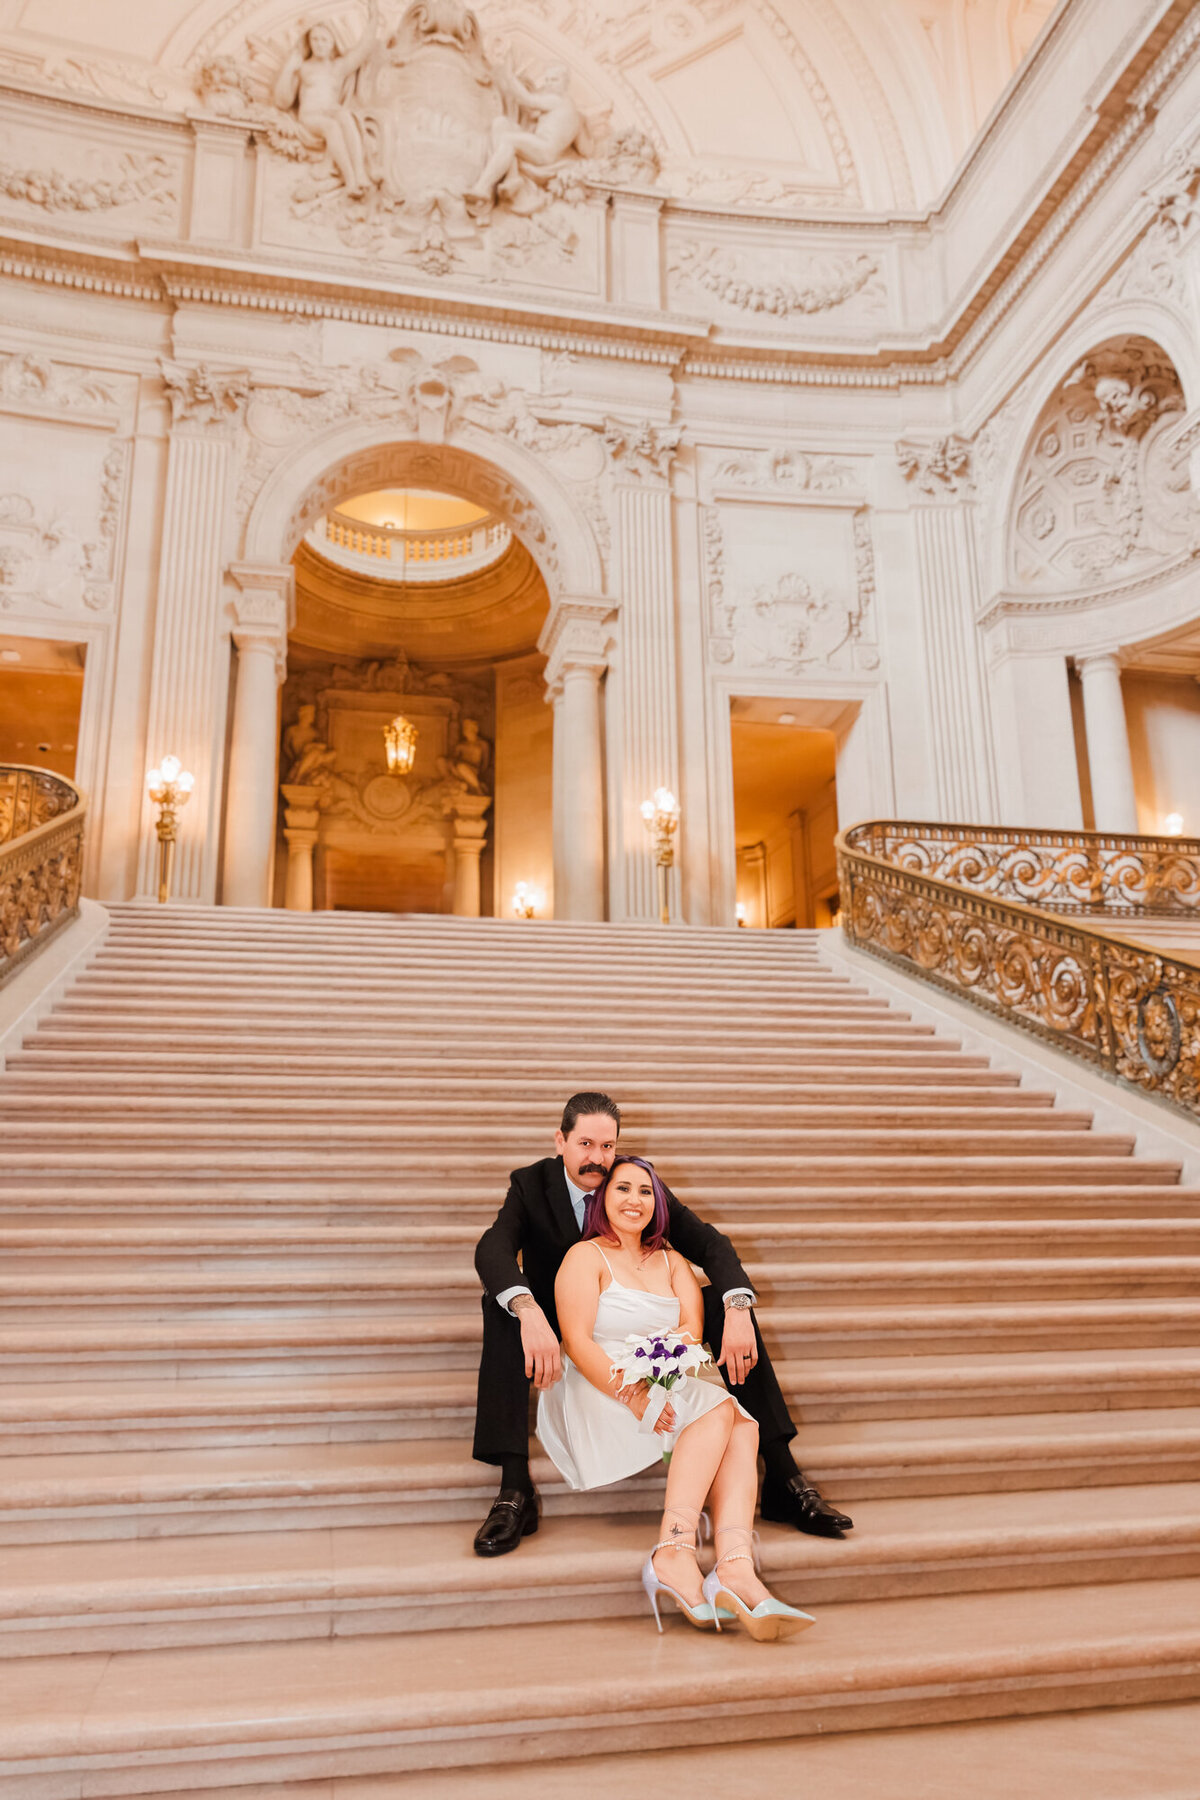 Eva and Tony-Wedding-San Francisco City Hall-Emily Pillon Photography-S-062223-24